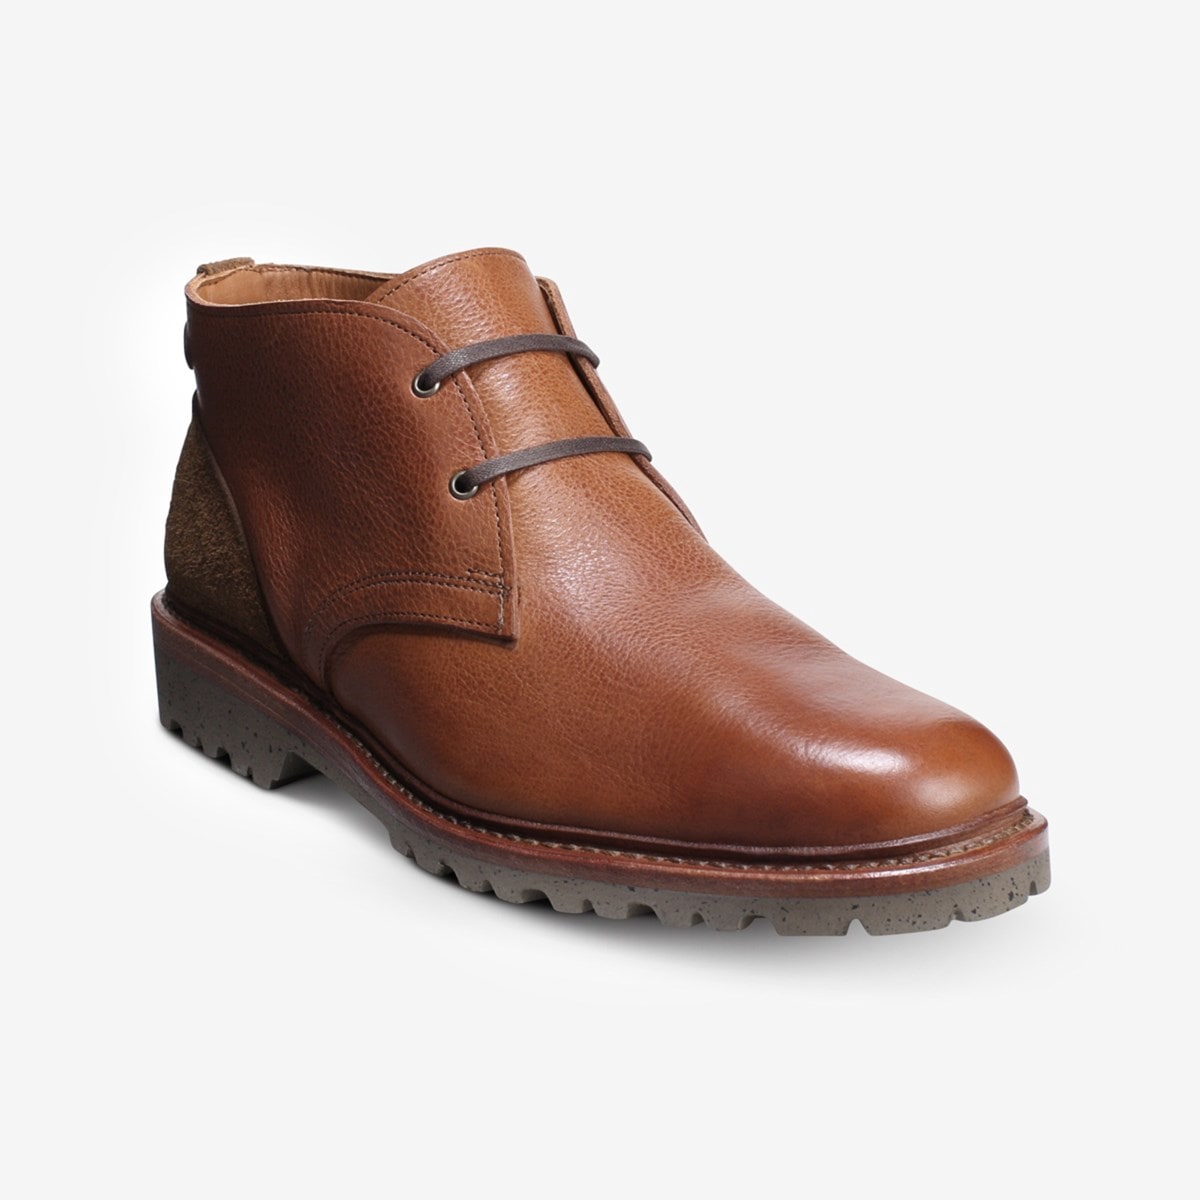 Discovery Chukka Boot | Men's Boots | Allen Edmonds